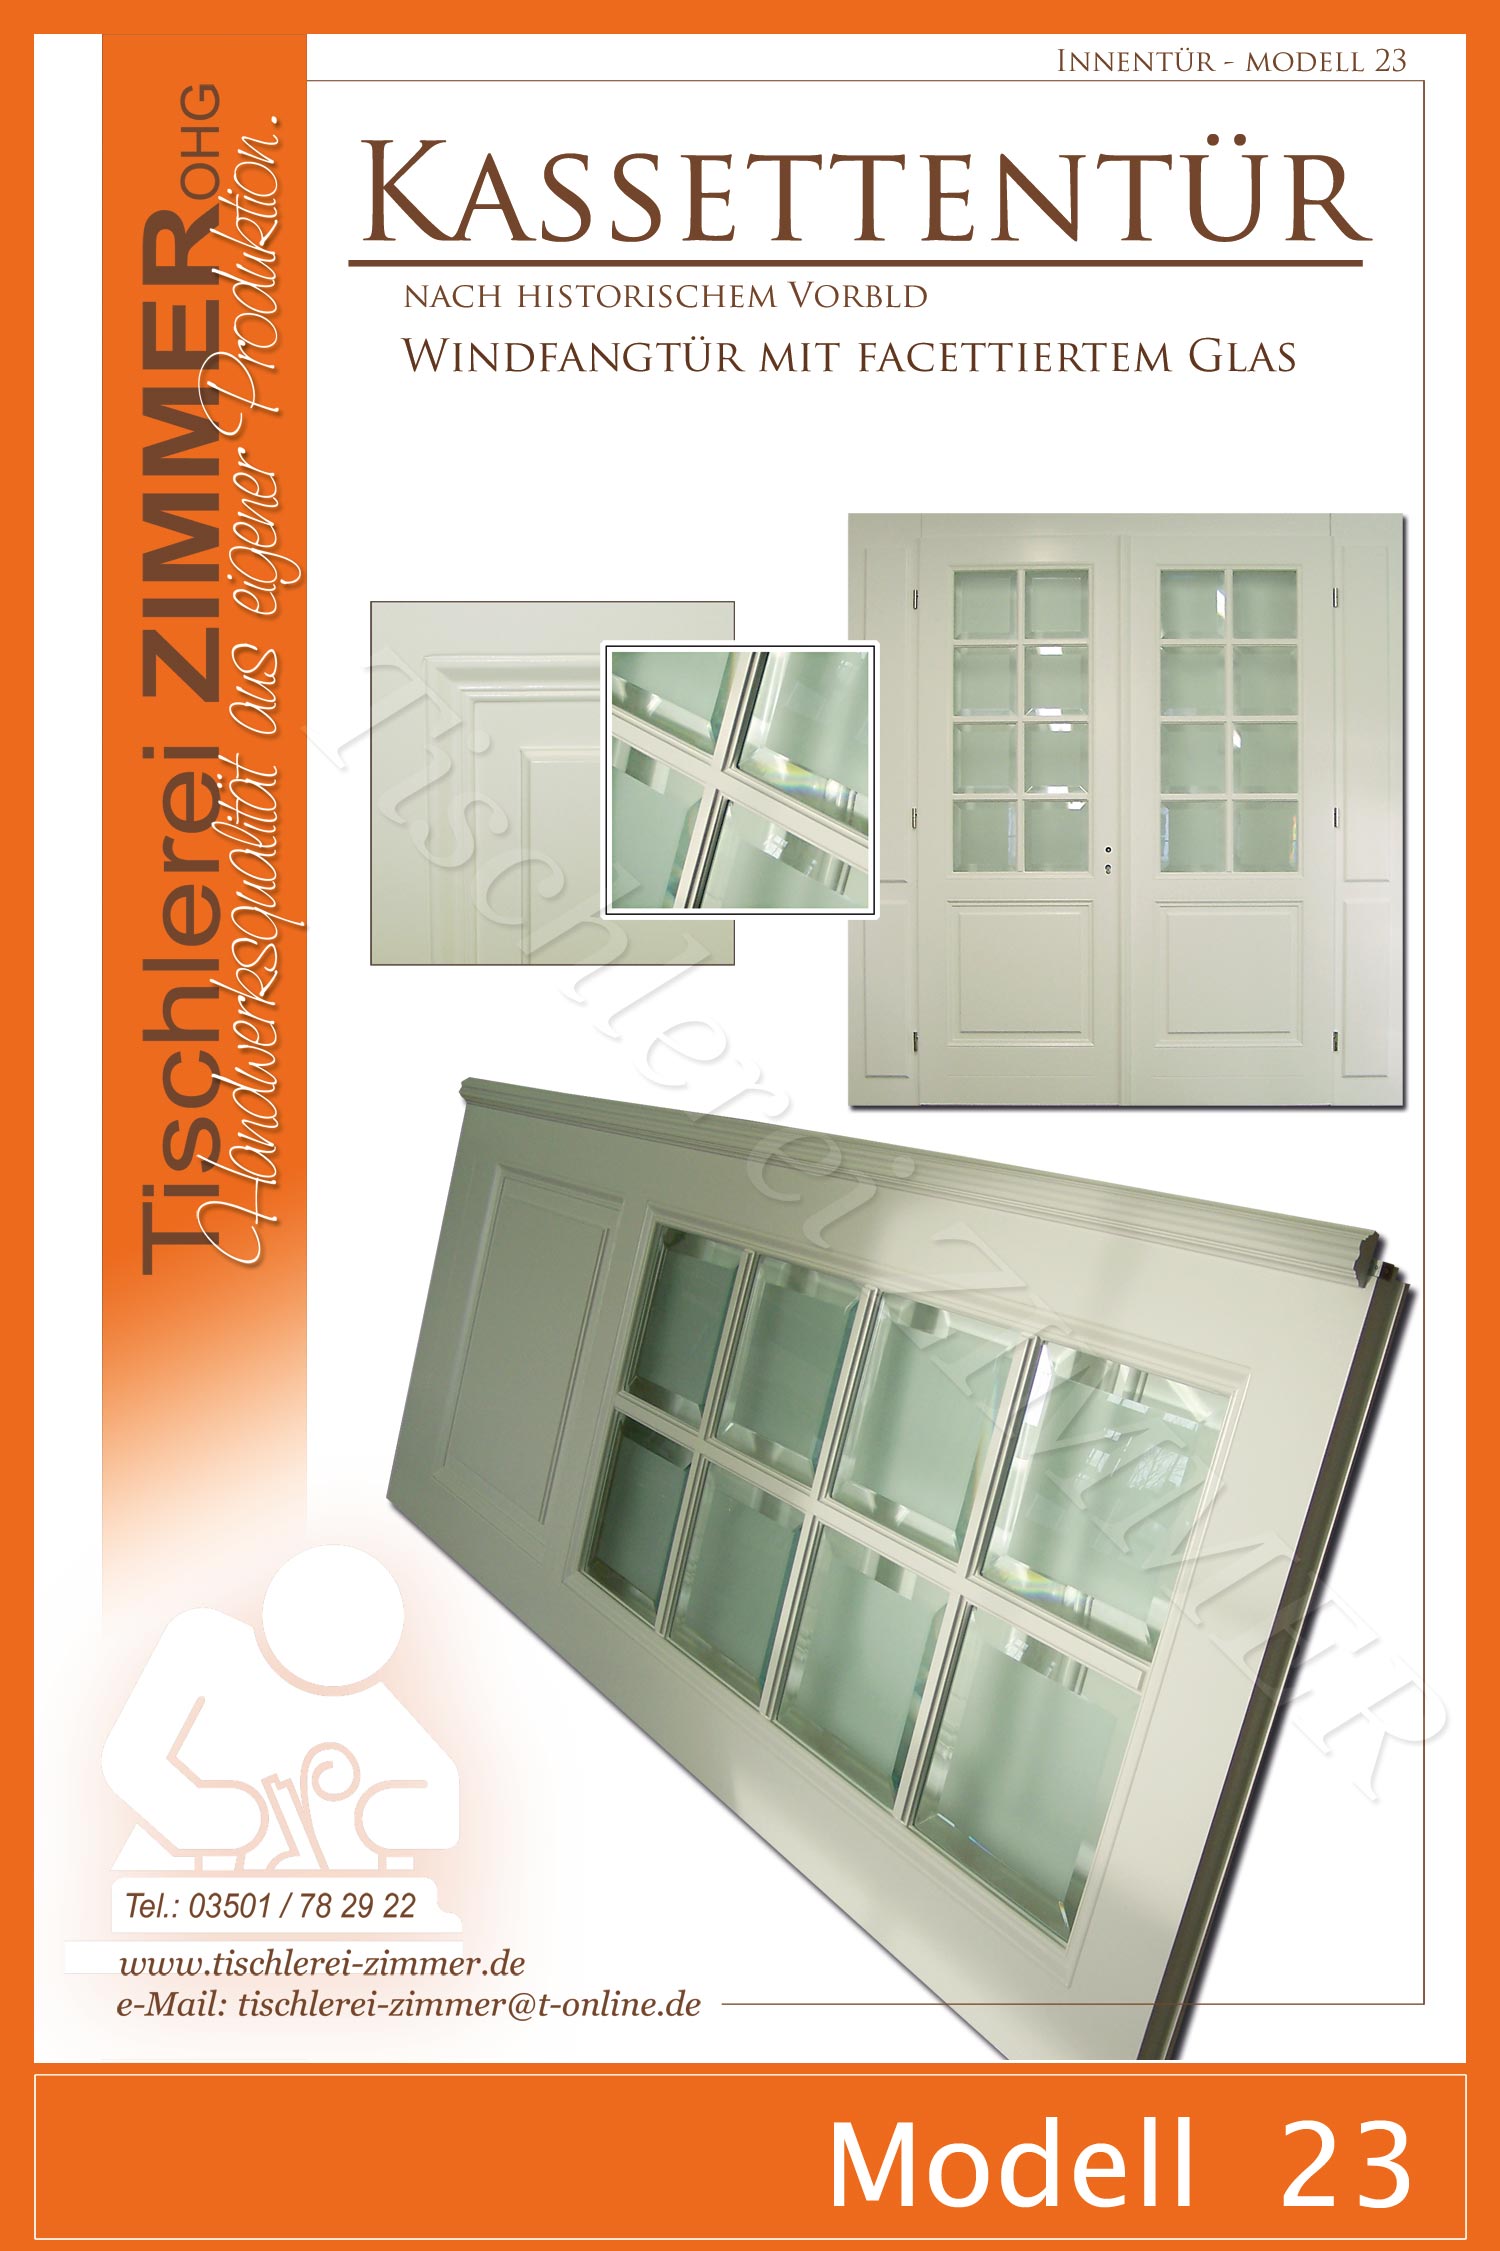 zweiflügelige Kassettentür mit facettierten Glasscheiben und individuellen Seitenteilen